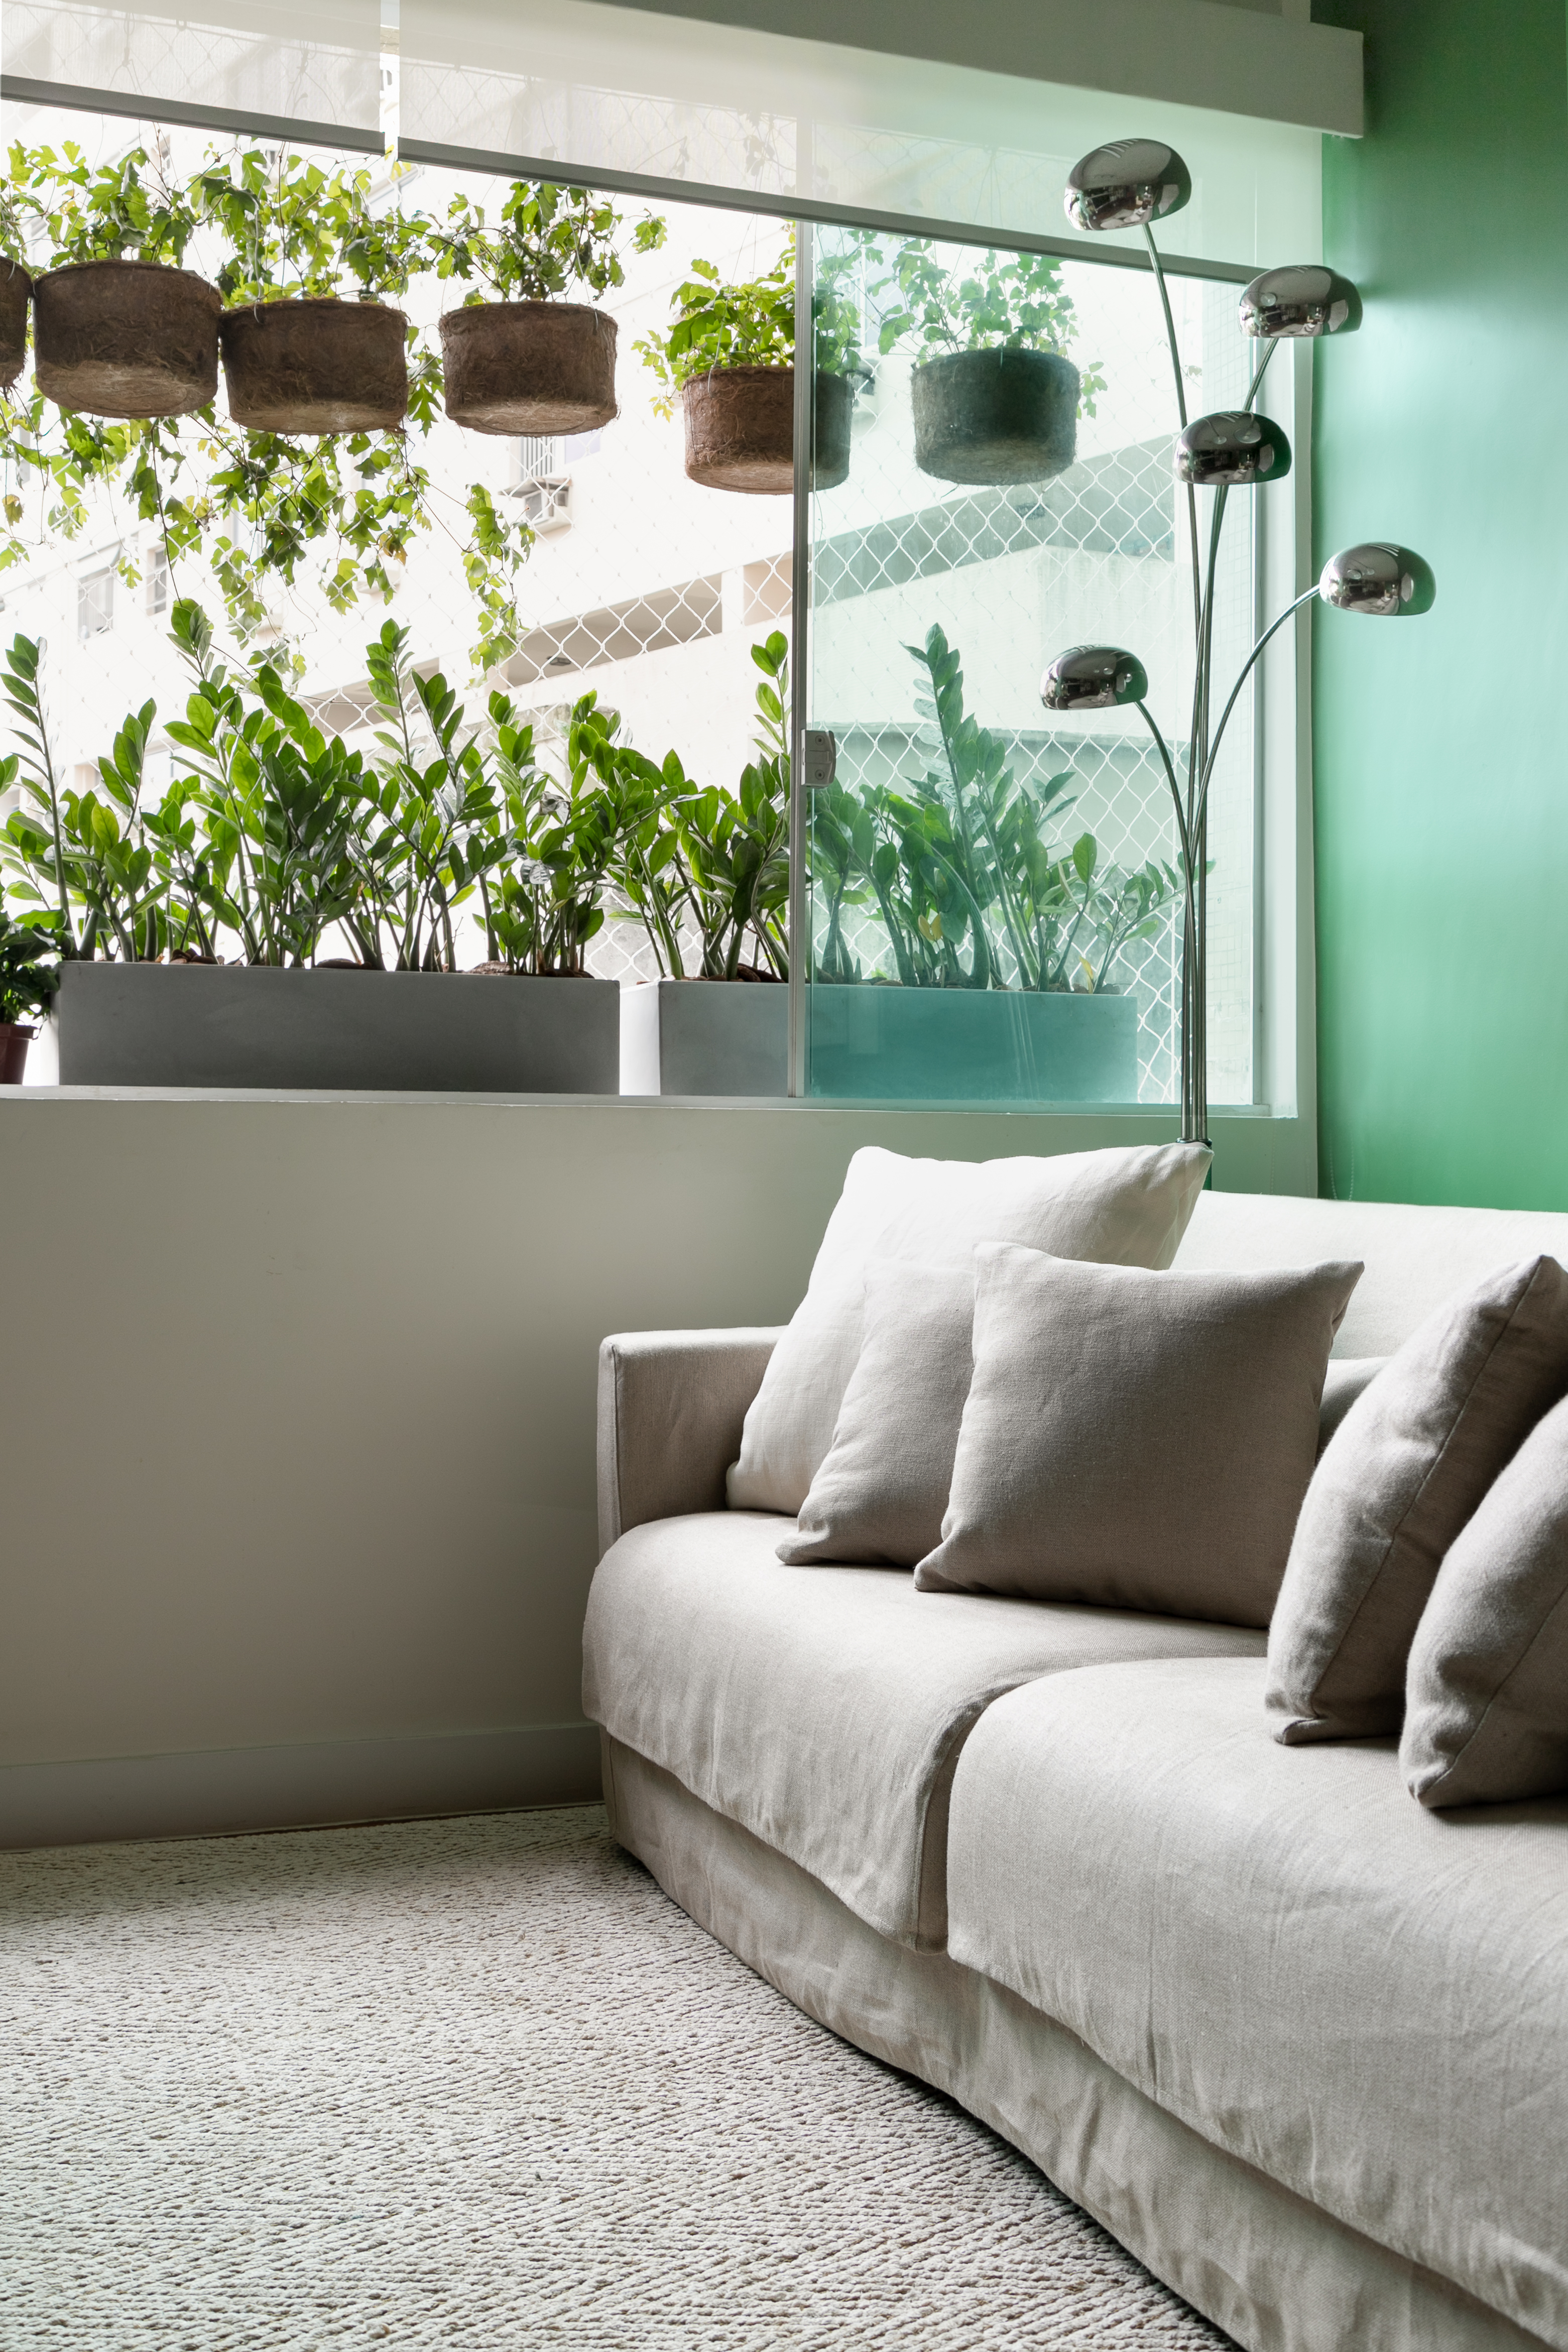 Projeto de Marcela Martins. Na foto, sala de estar com sofá claro, parede verde e plantas na janela.